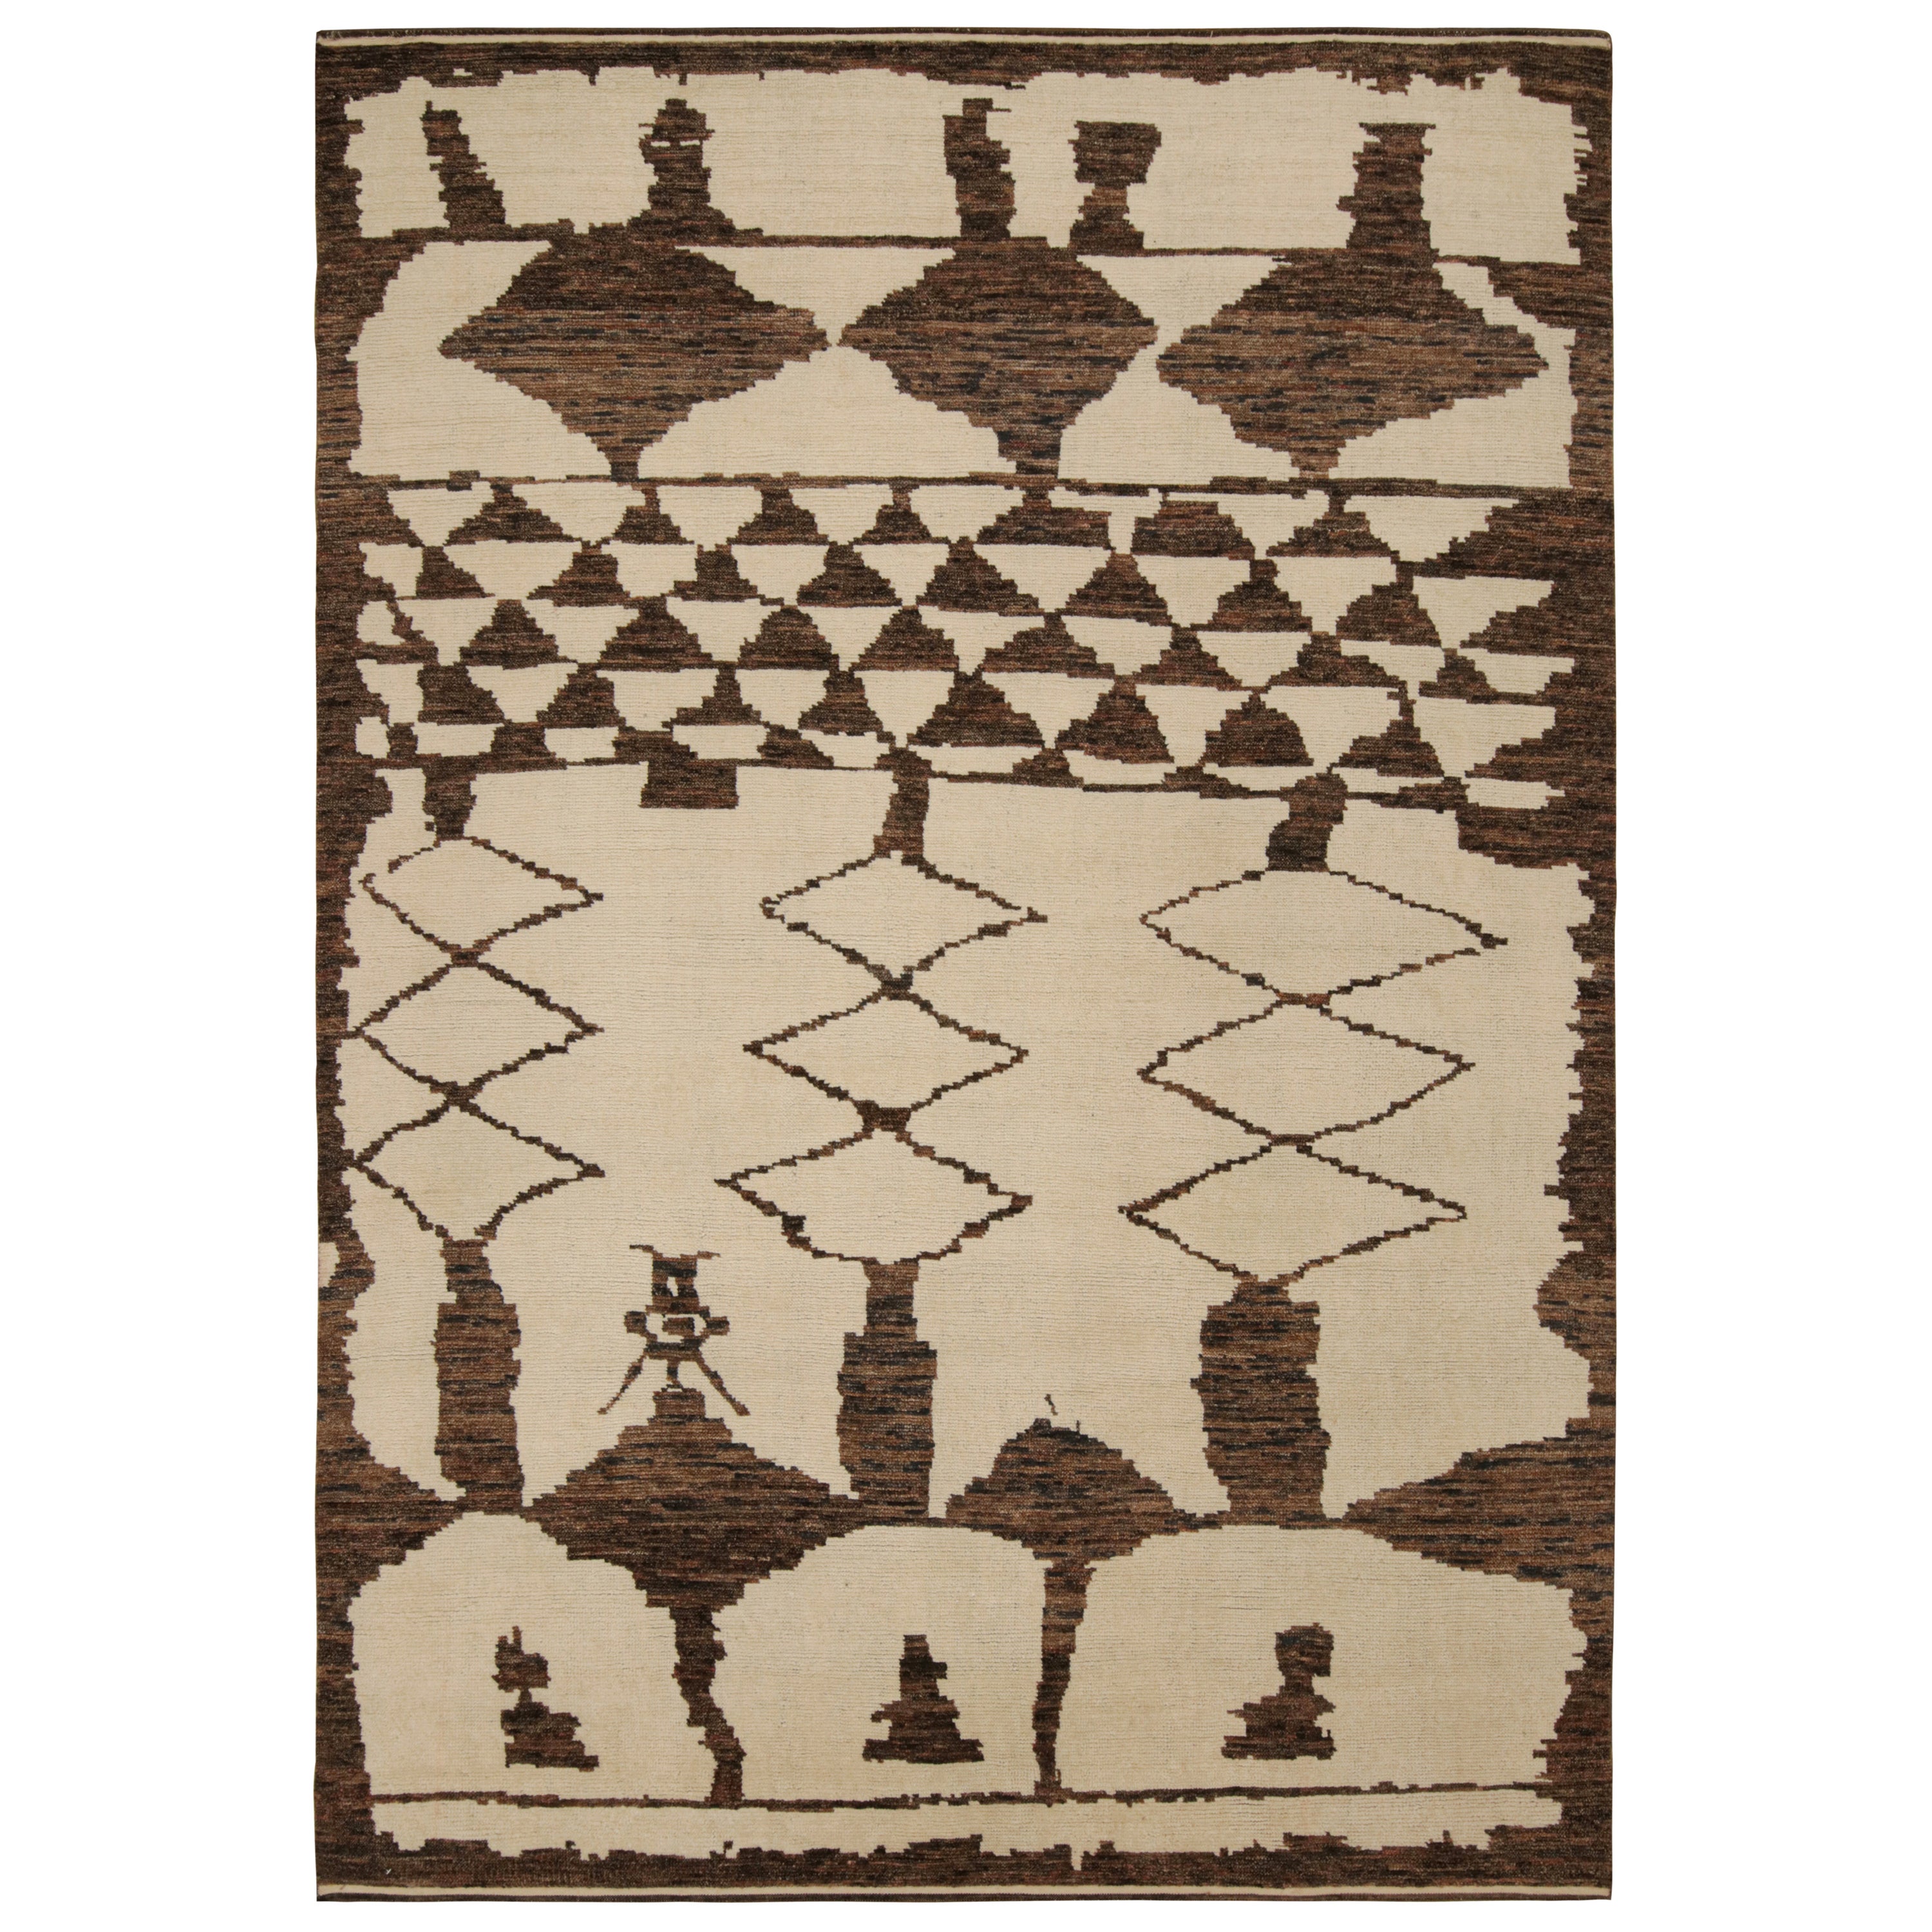 Rug & Kilim's Moroccan Style Rug in Beige and Brown Geometric Patterns (tapis de style marocain à motifs géométriques beige et Brown) en vente